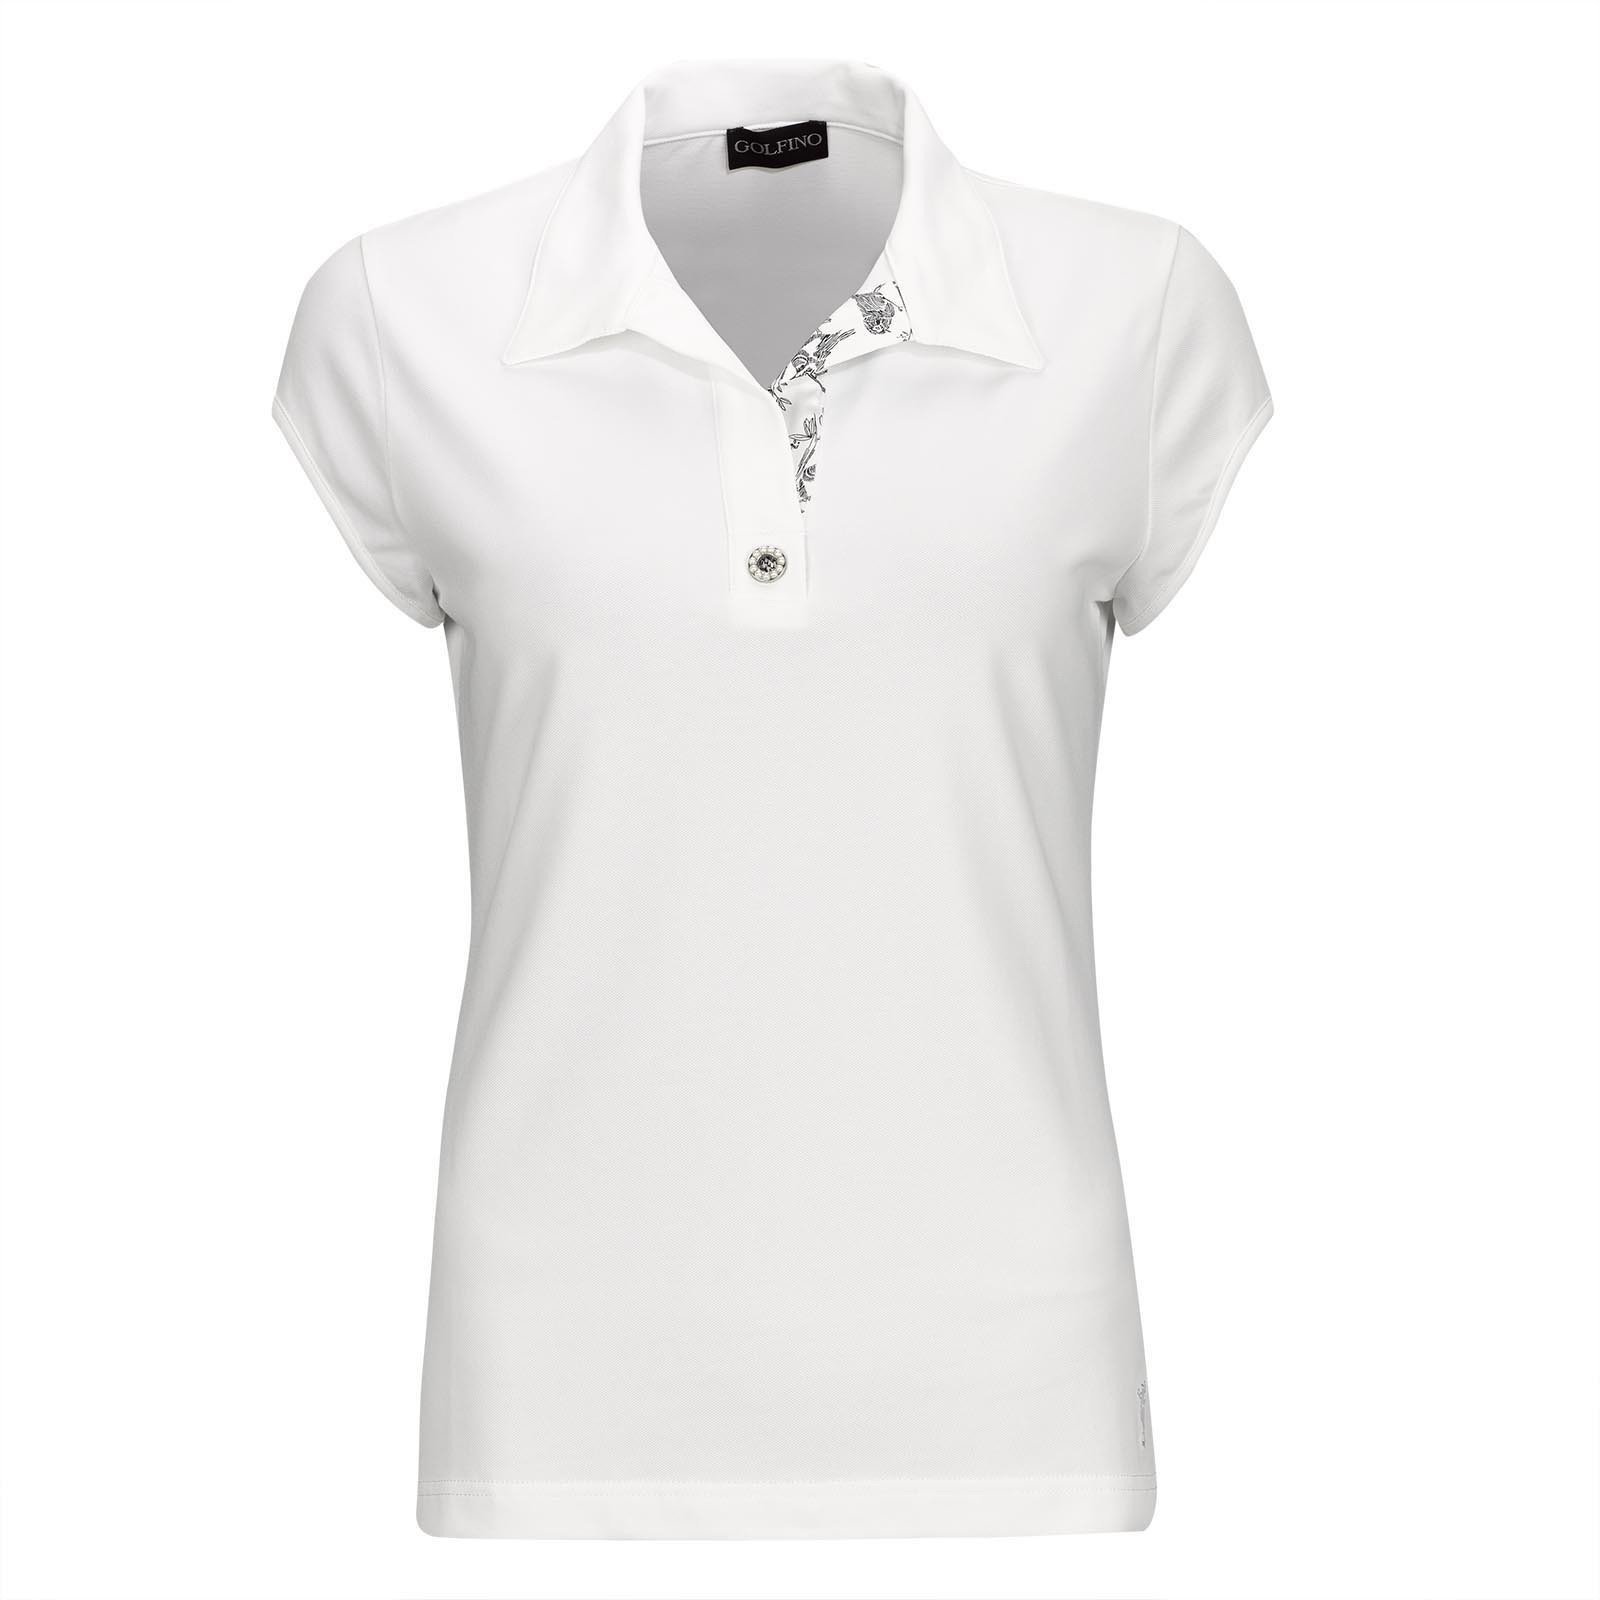 Πουκάμισα Πόλο Golfino Pearls Cap Sleeve Womens Polo Shirt White 38